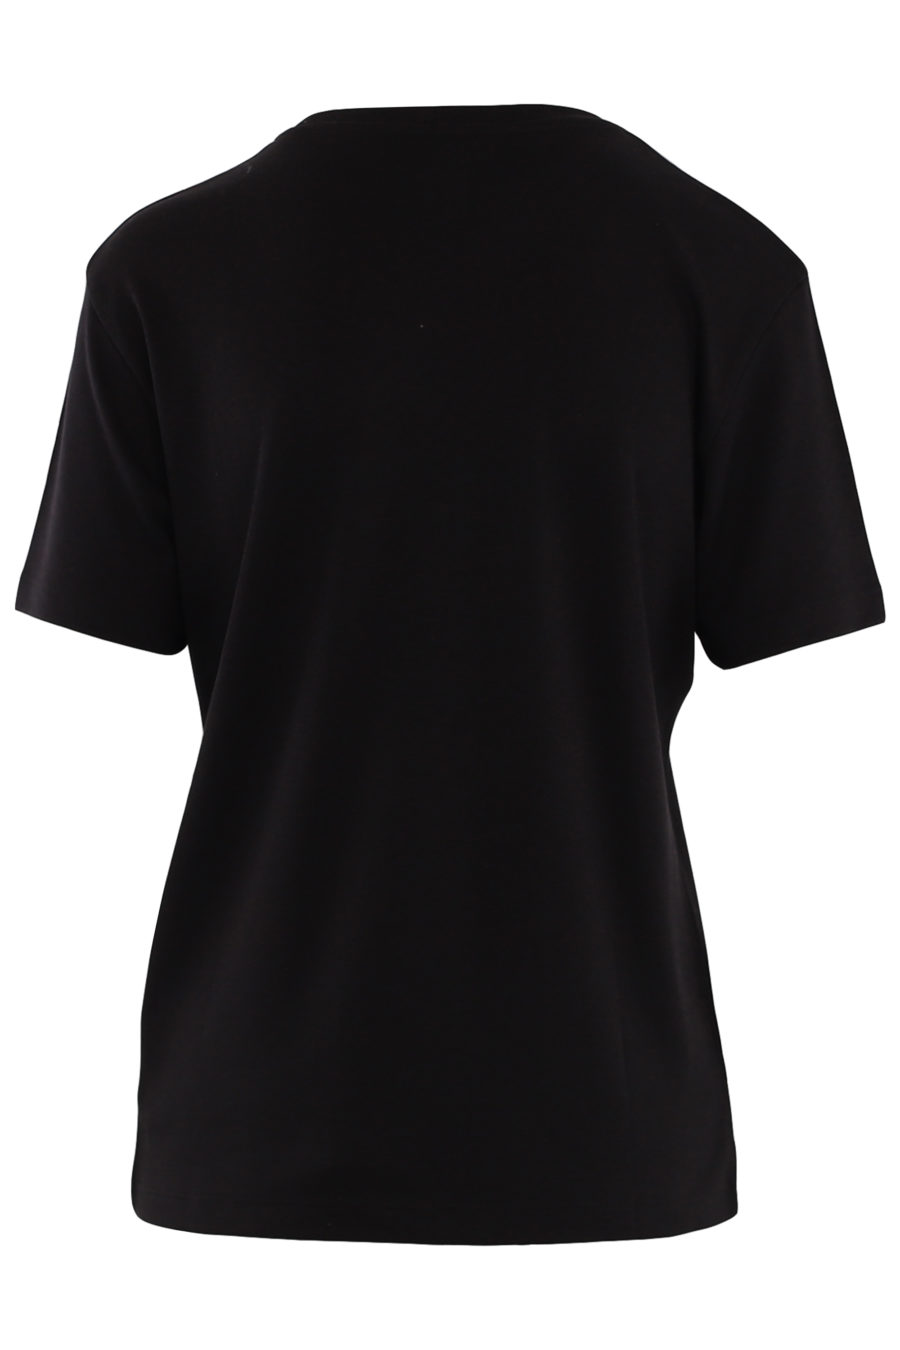 T-shirt noir unisexe avec logo - e224d47c1c109734bda8f433e87dc3553e04ca8b